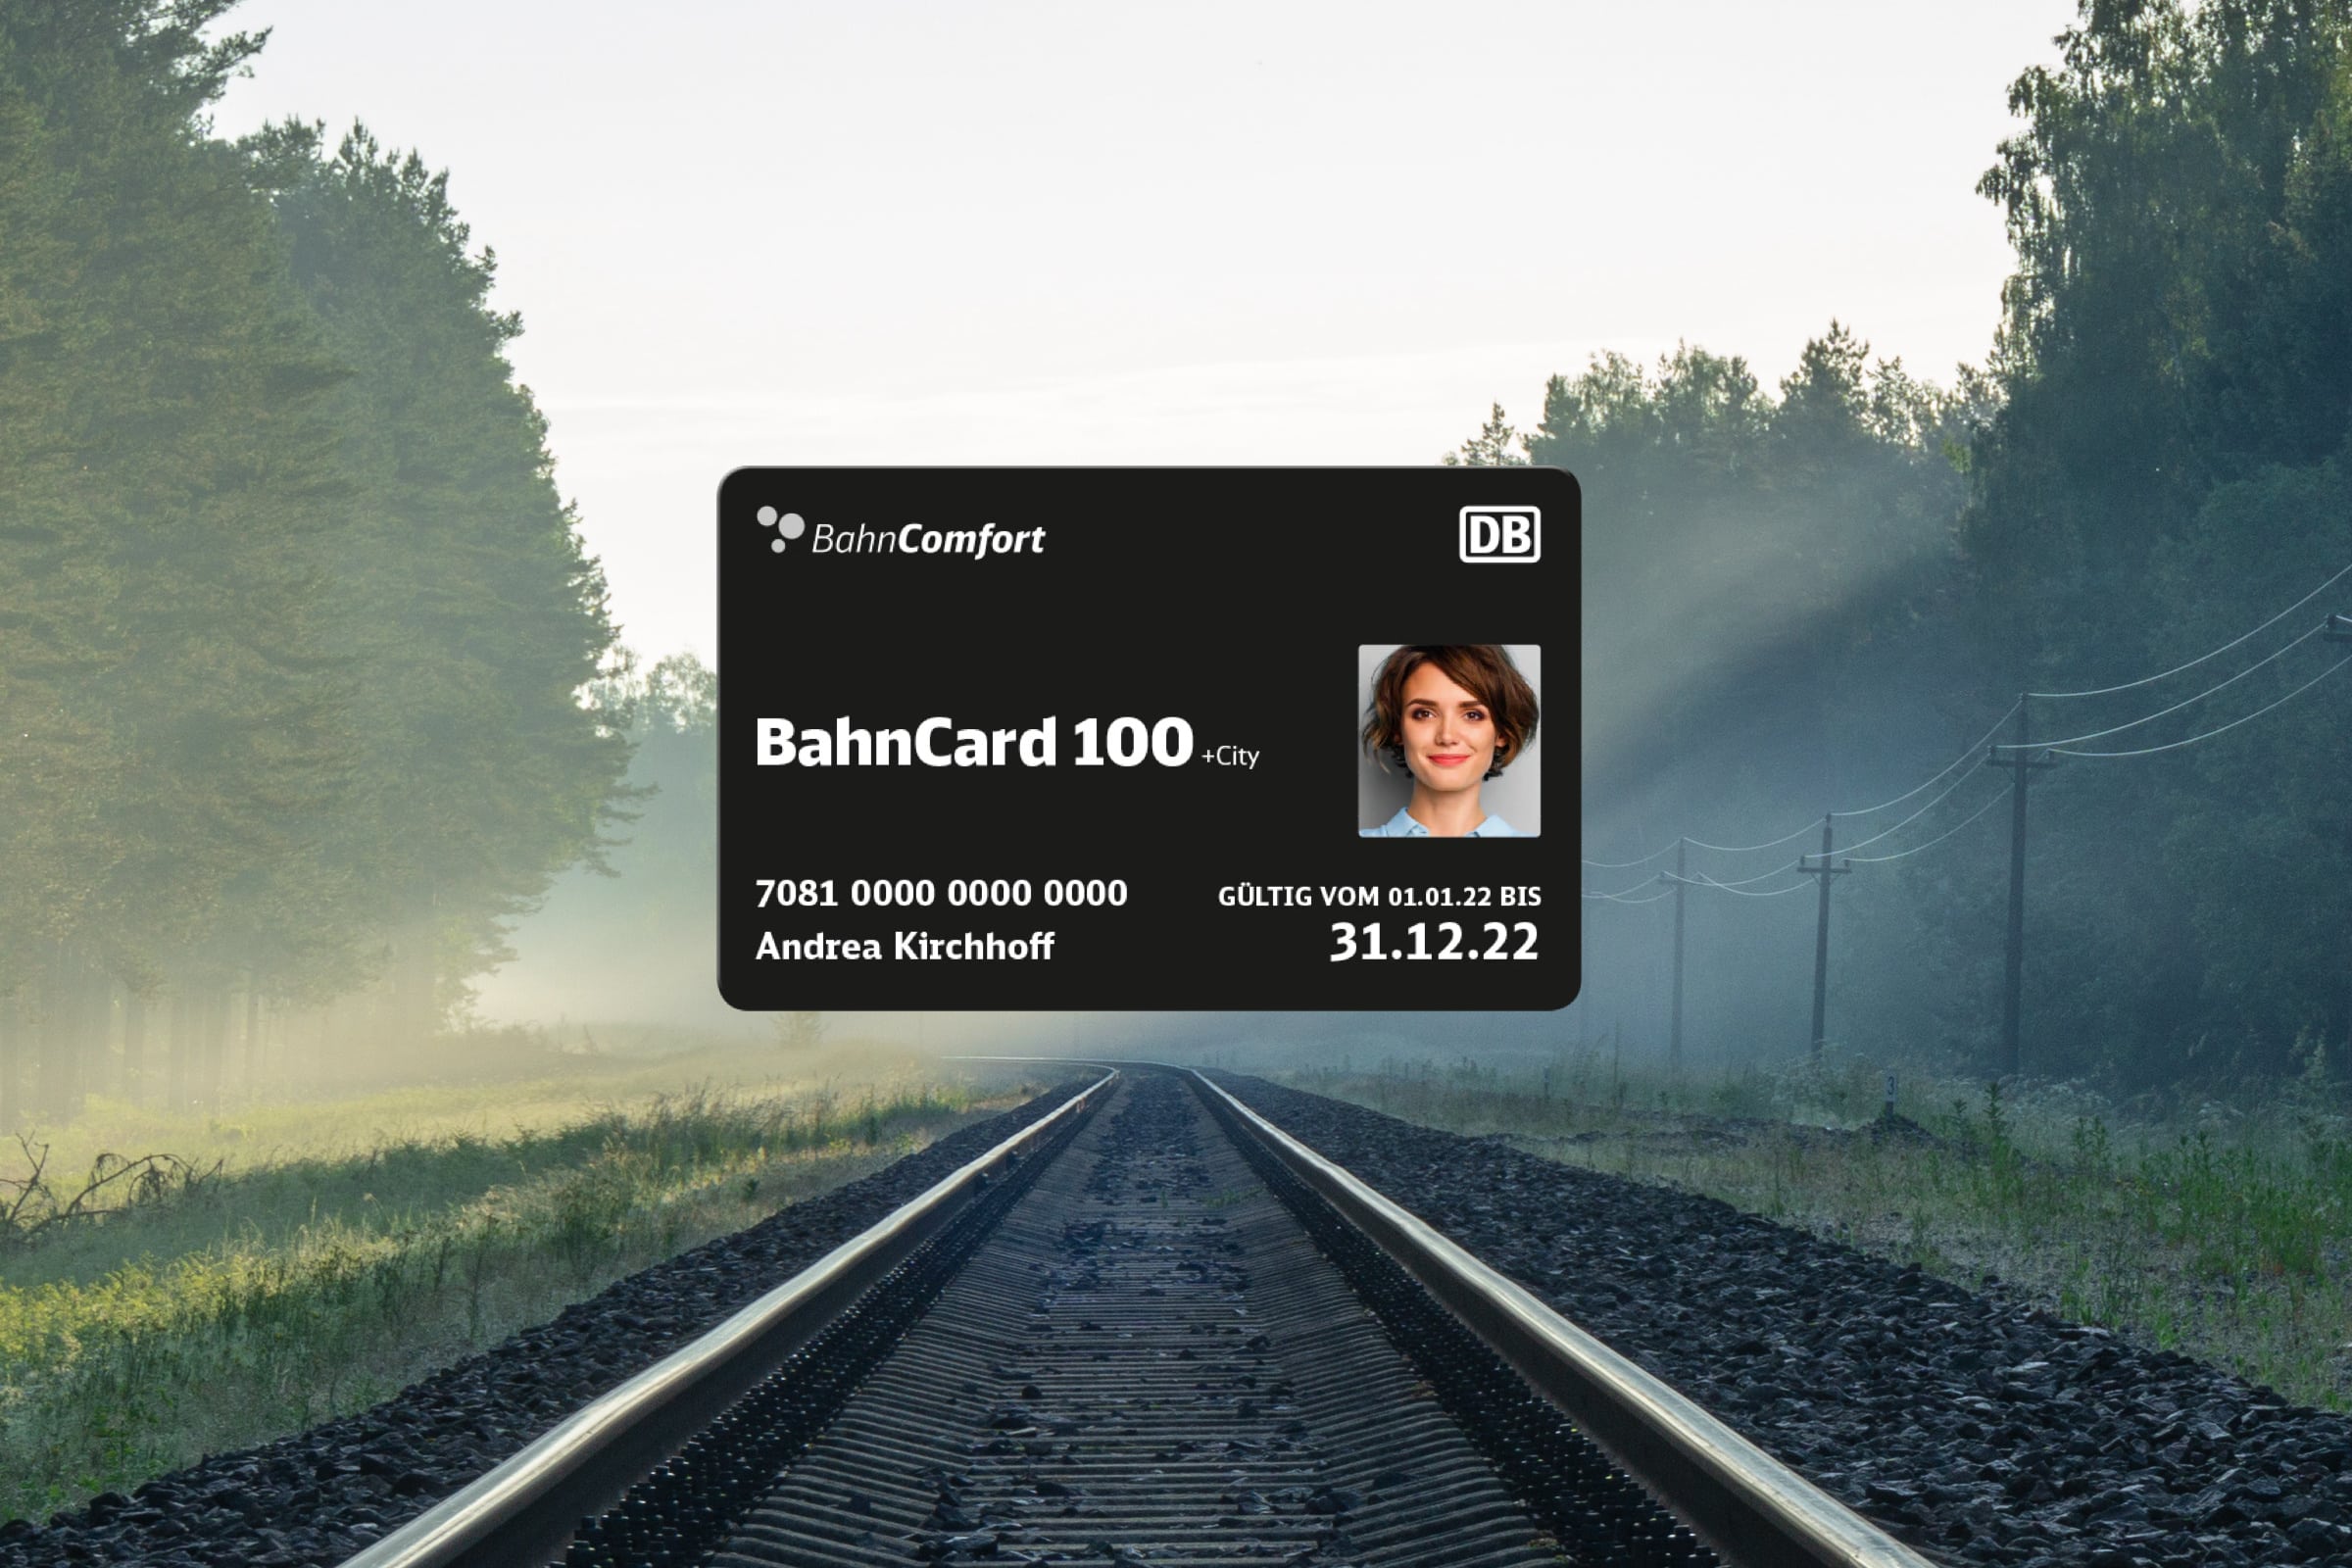 BahnCard 100